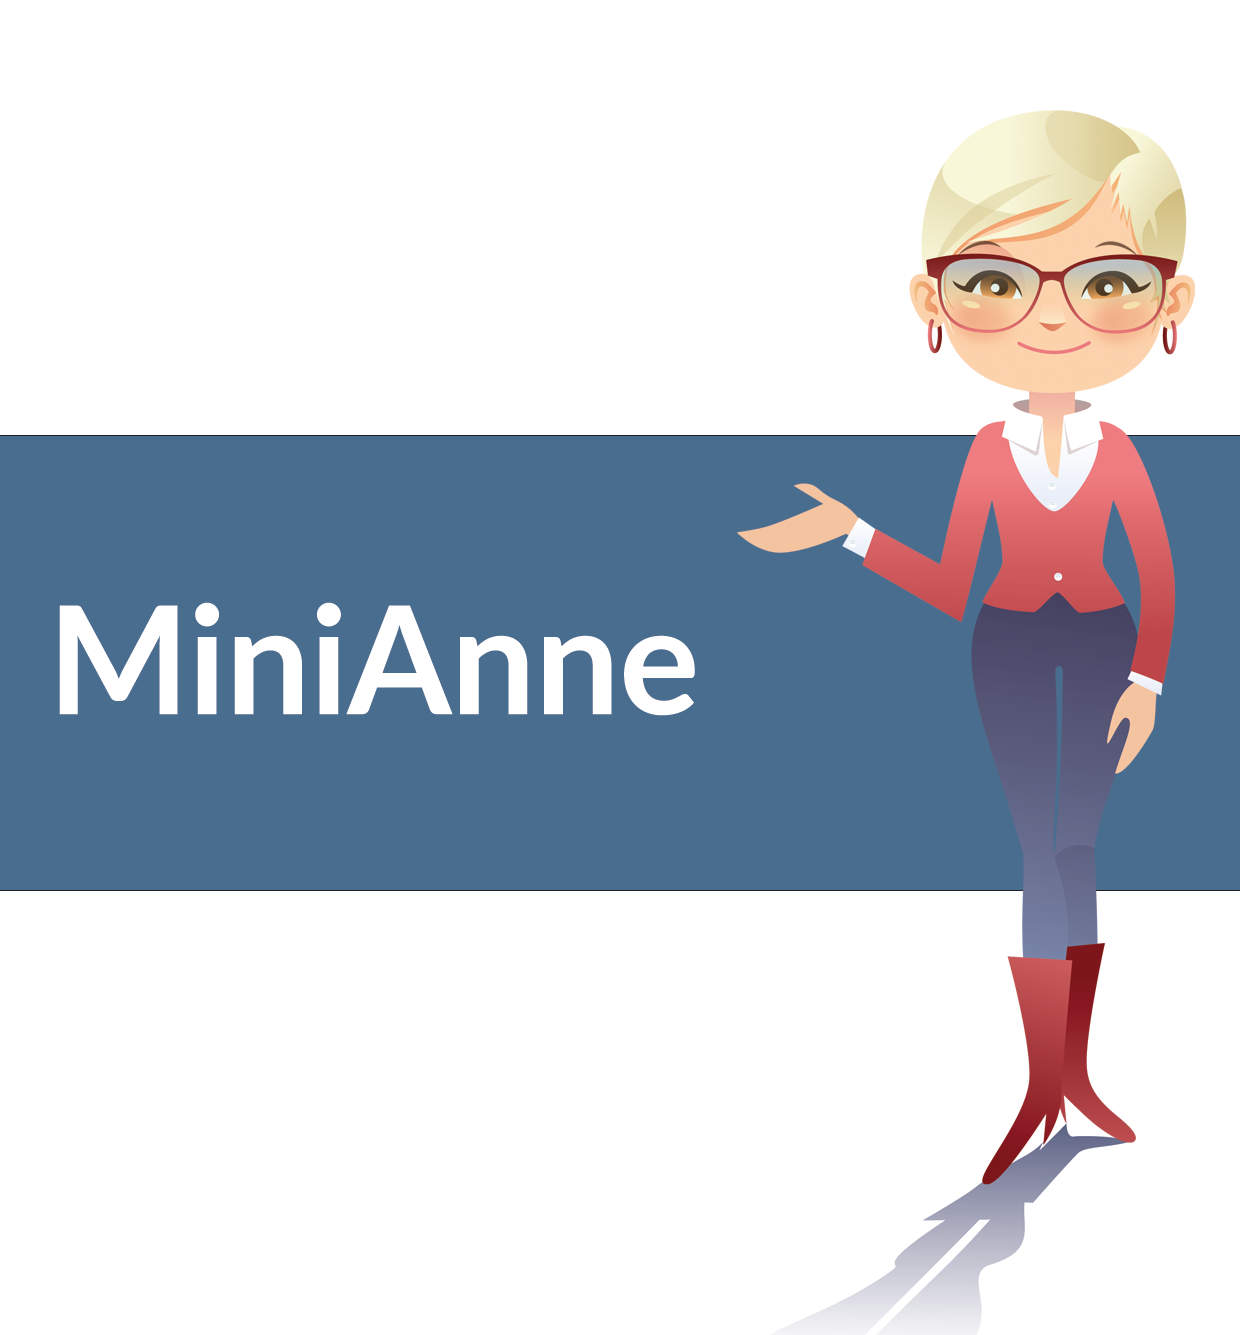 Mini Anne